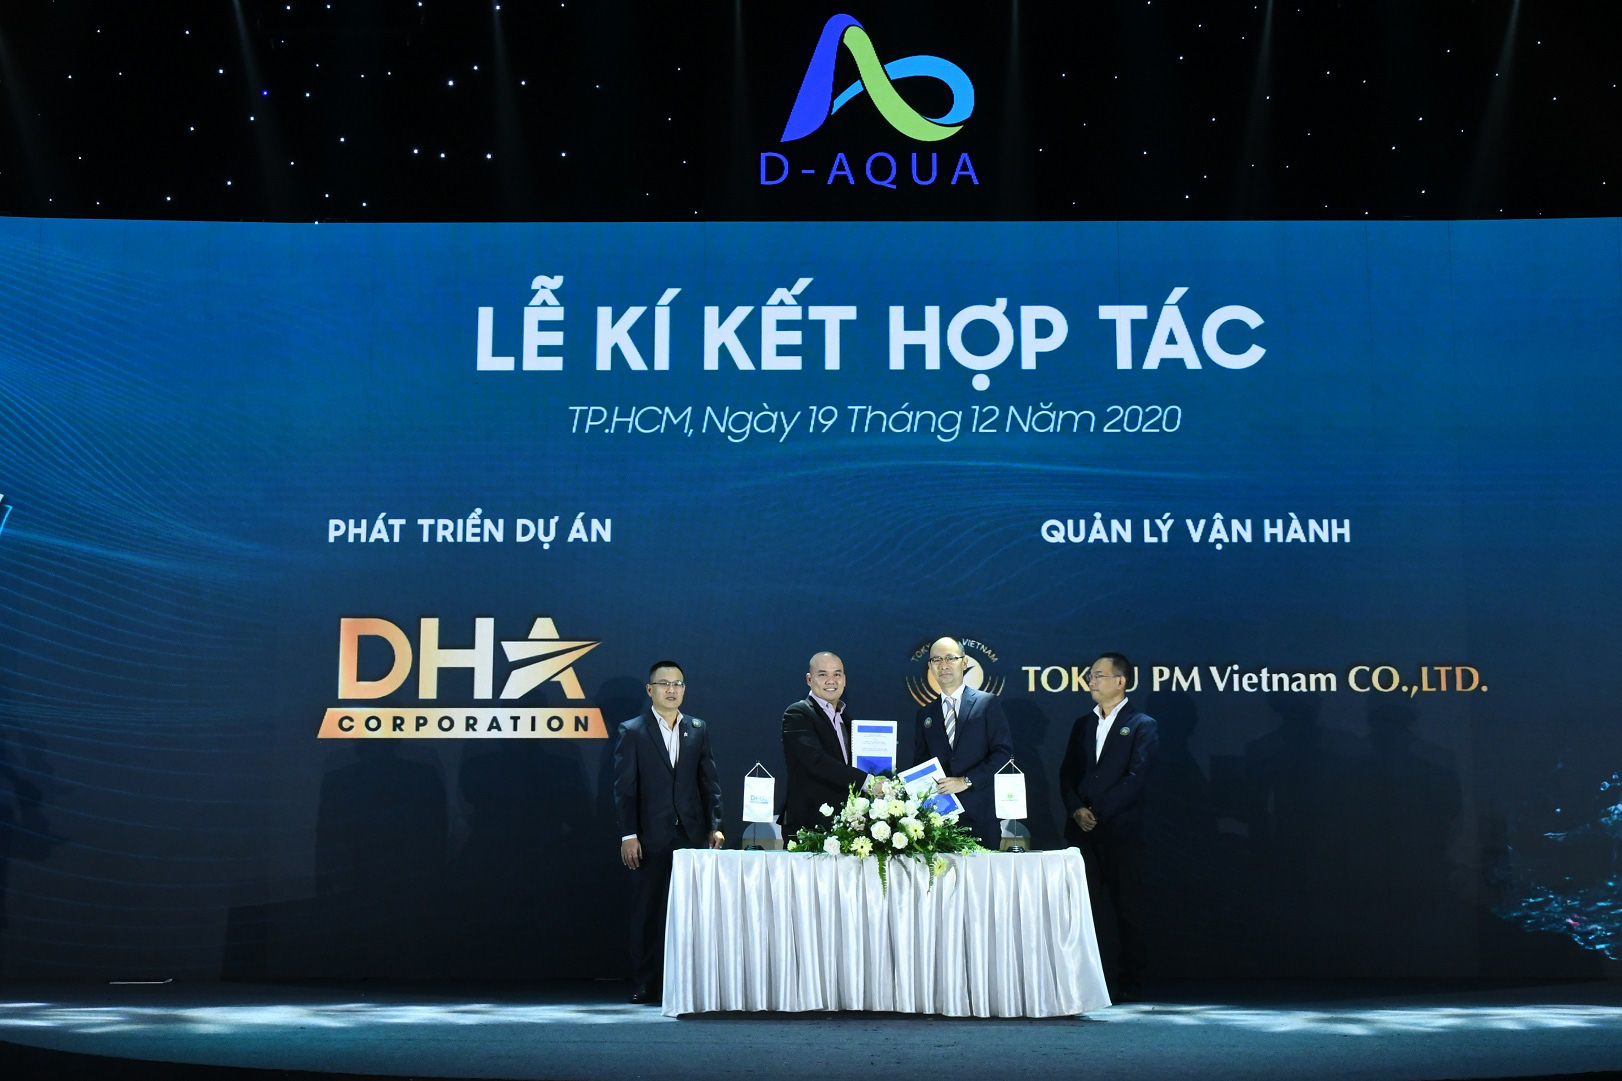 DHA Corp ký kết với các đối tác chiến lược phát triển dự án D-Aqua - Ảnh 2.